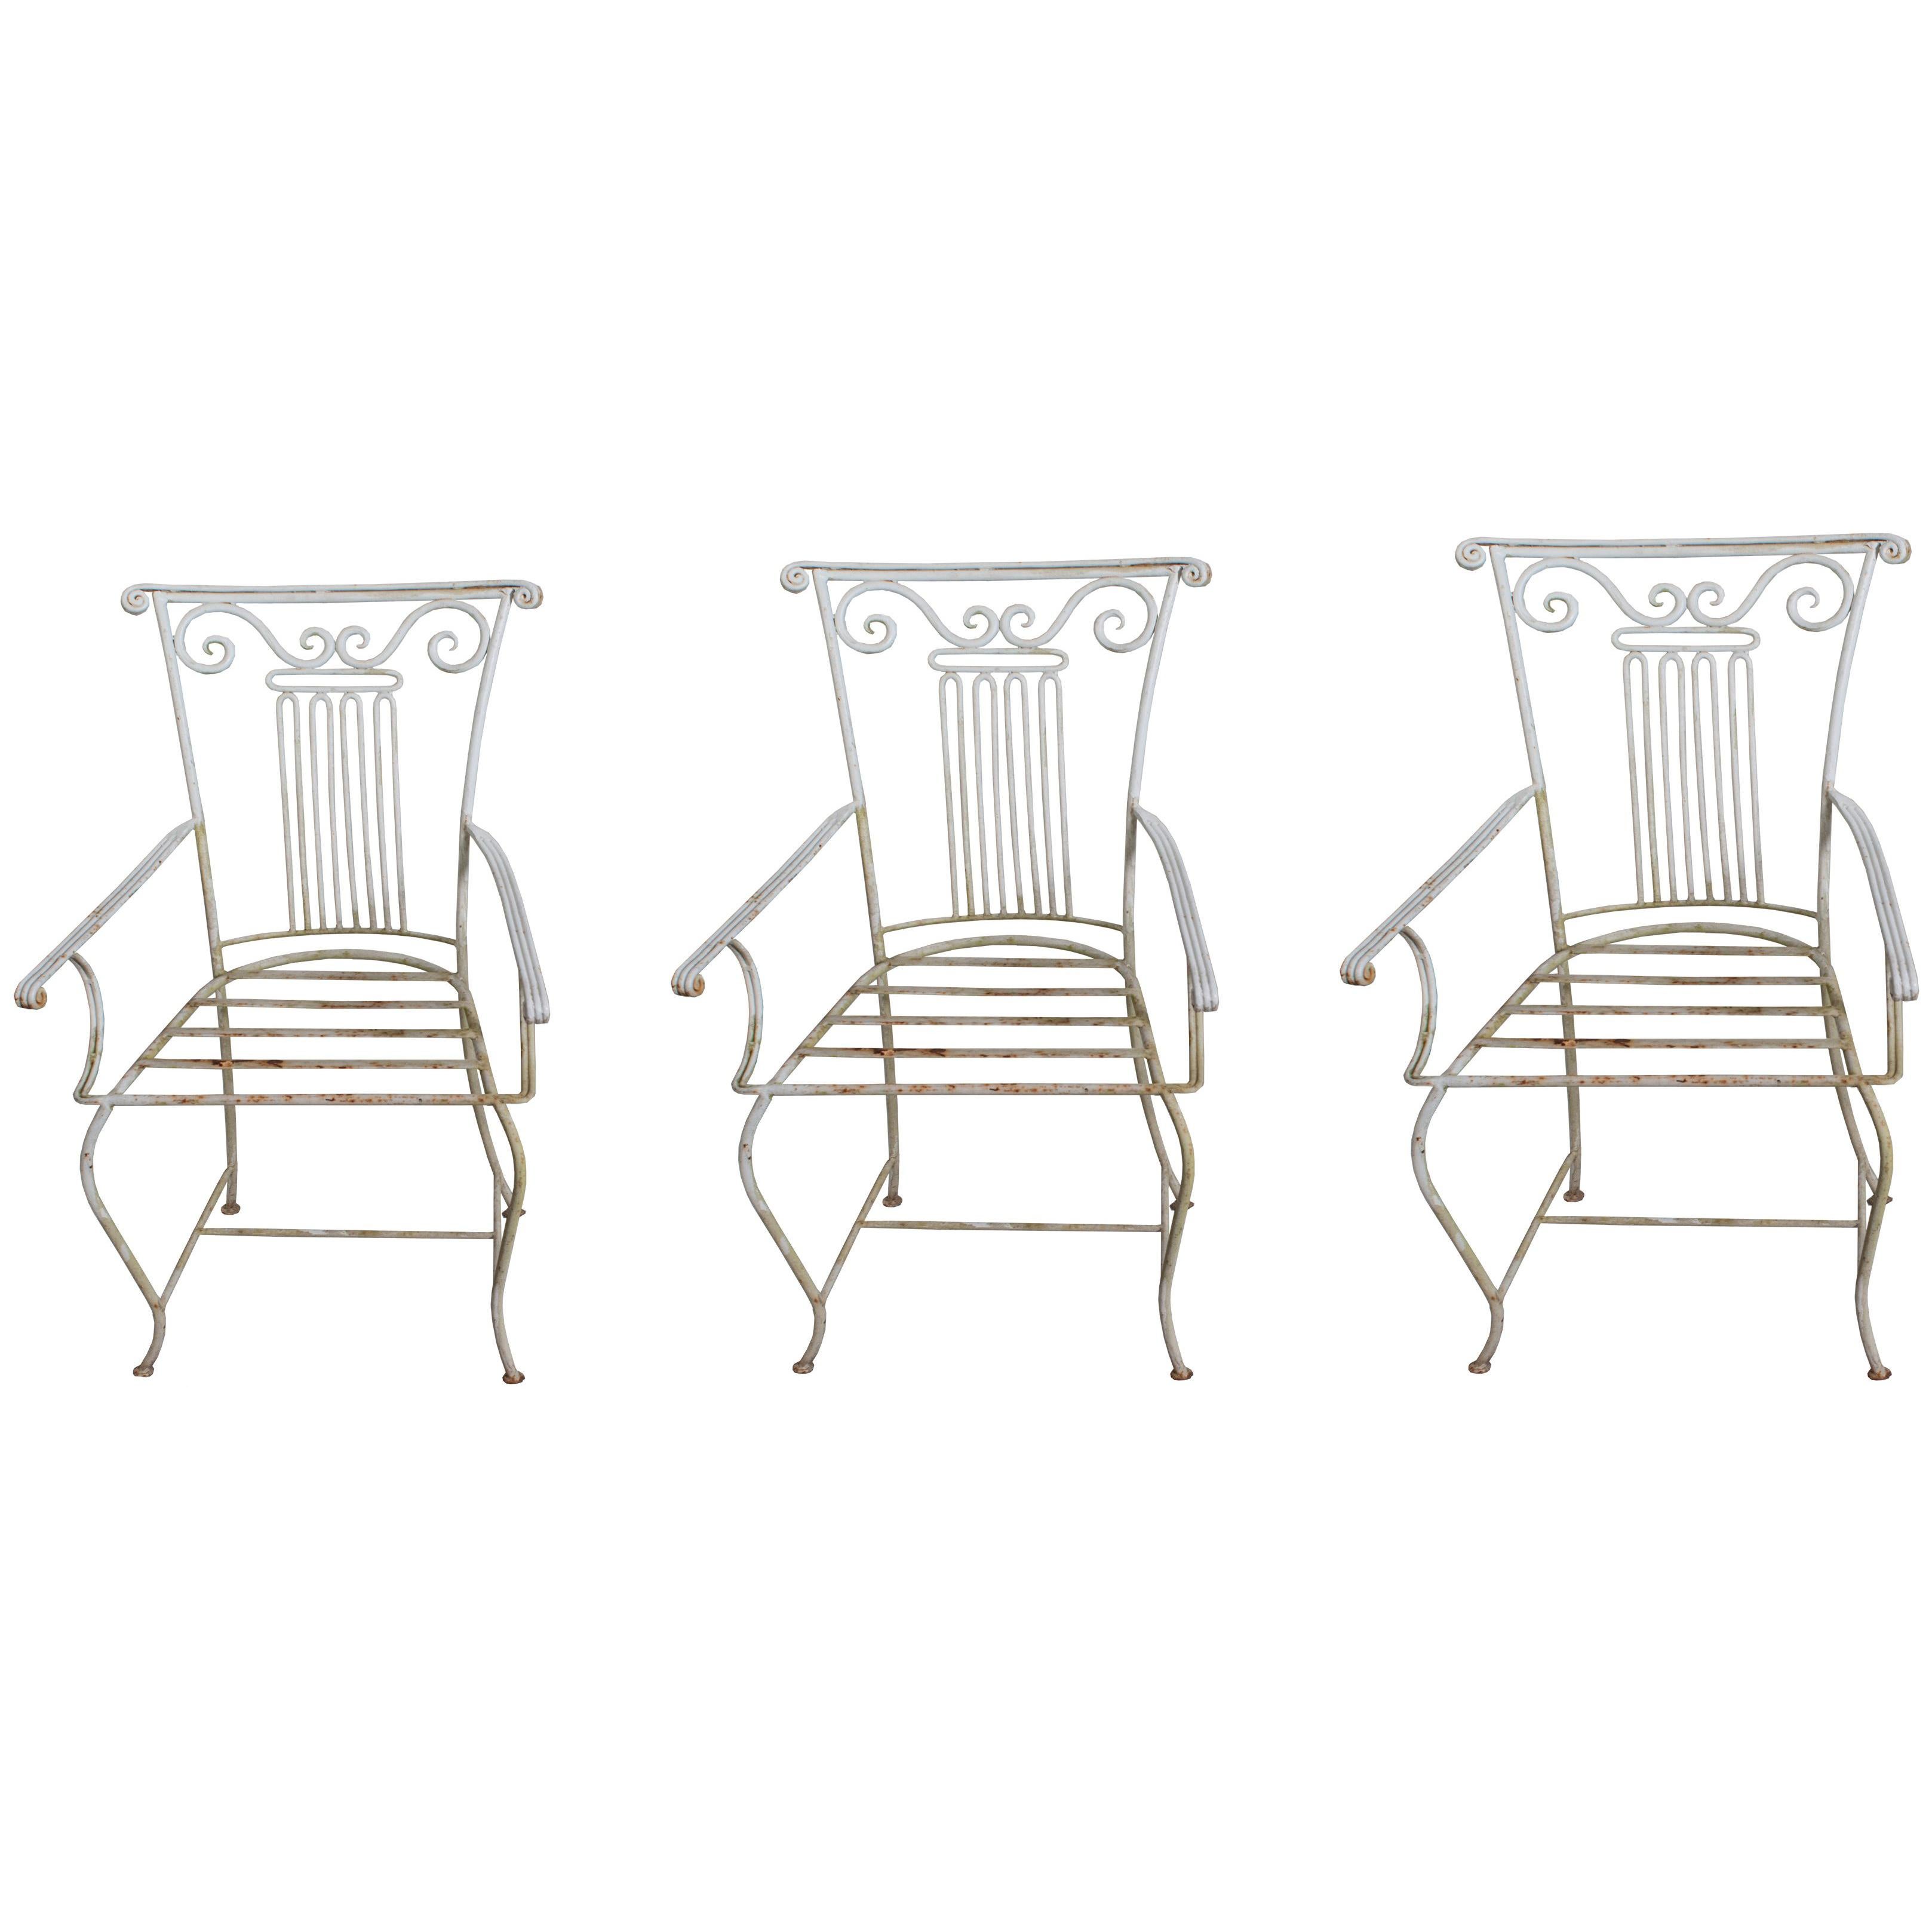 Trois chaises de jardin néoclassiques en fer forgé vendues individuellement